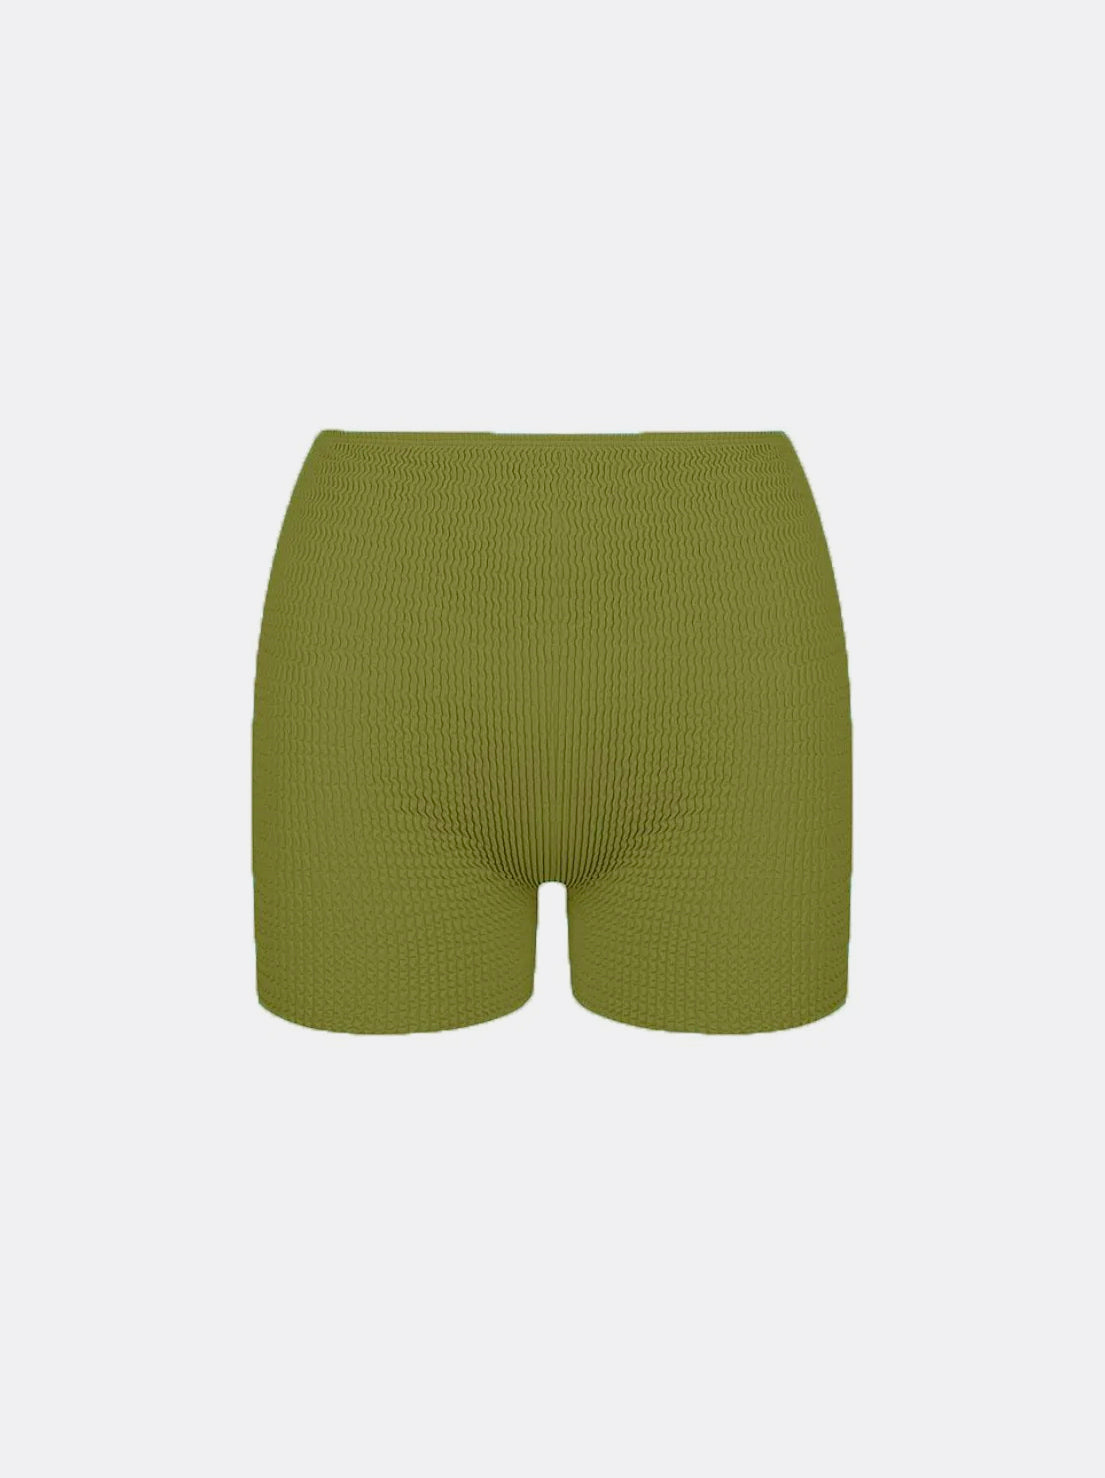 Cleonie Swim - West Coast Mini Shorts - Moss